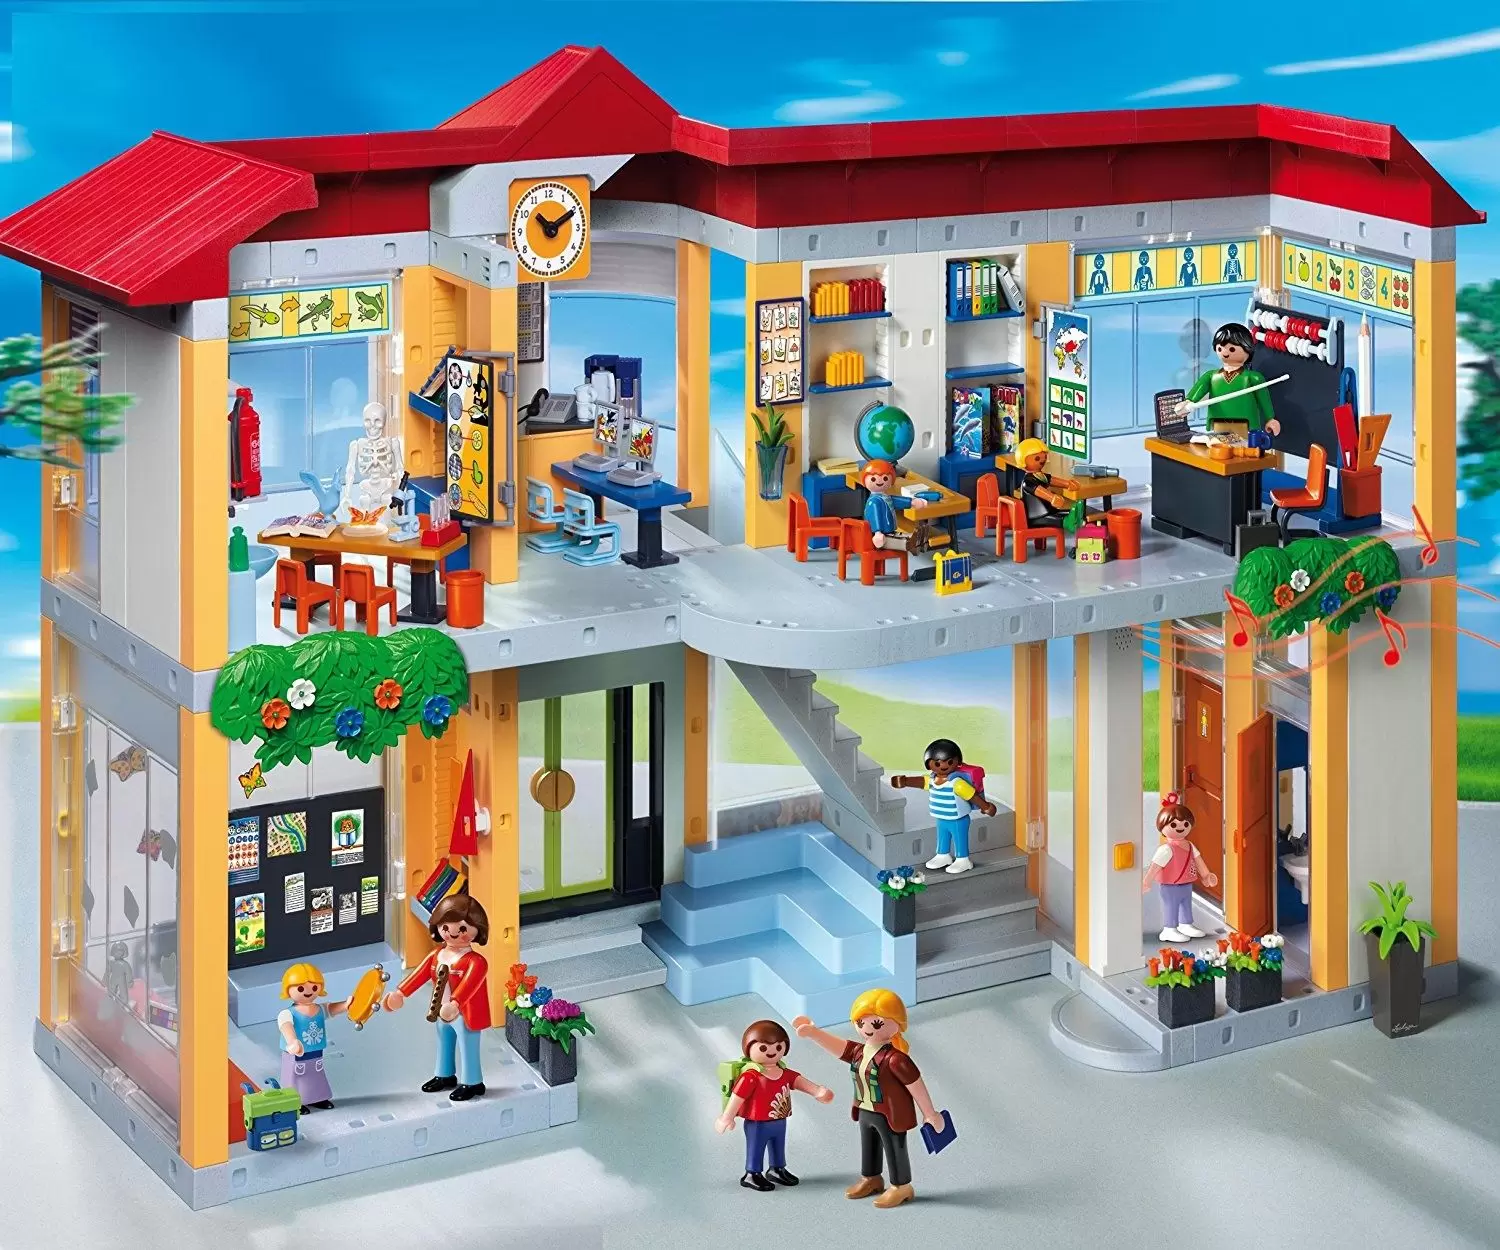 Kom op udslettelse Bemærkelsesværdig Furnished School Building - Playmobil in the City 4324